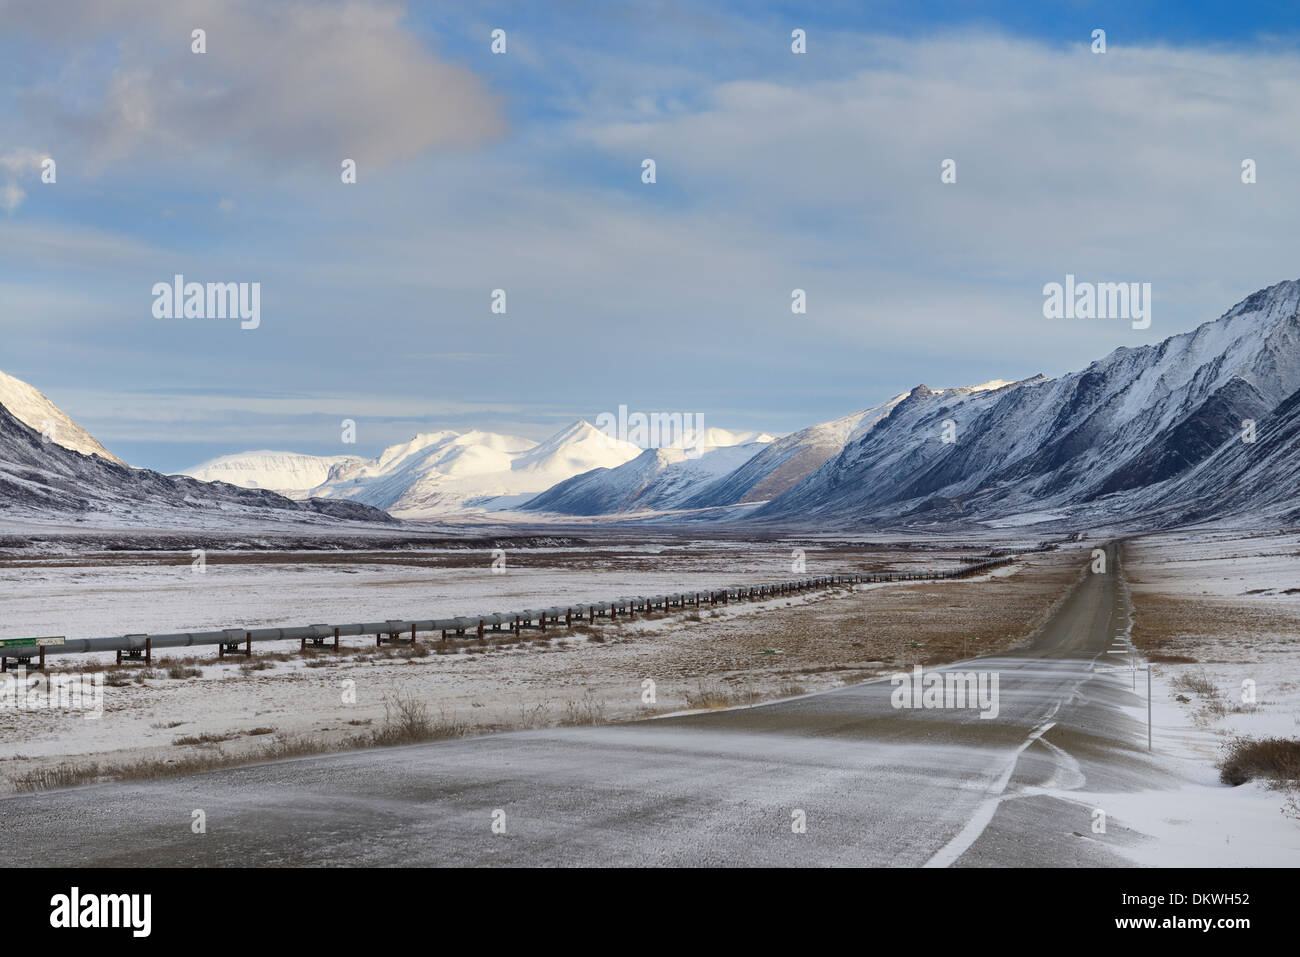 Snowy Dalton Highway und alyeska Pipeline in der Brooks Range Berge von Alaska usa Stockfoto